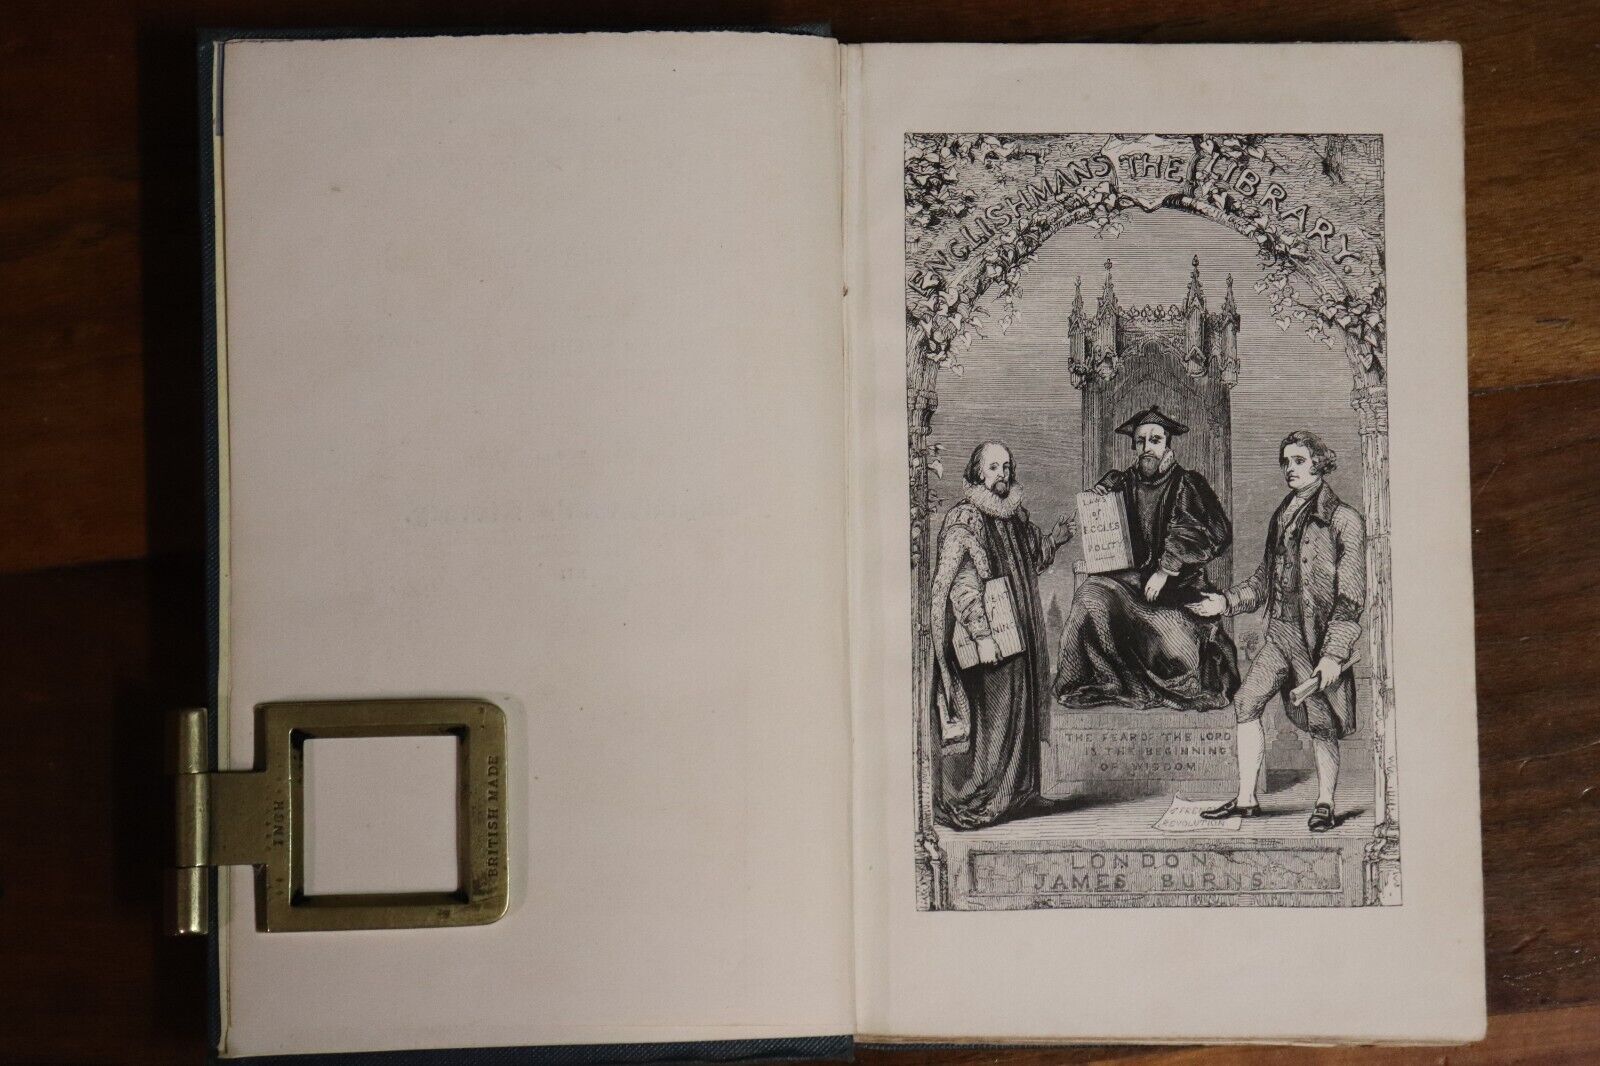 A Practical Discourse On Religious Assemblies - 1840 - Antique Religious Book - 0